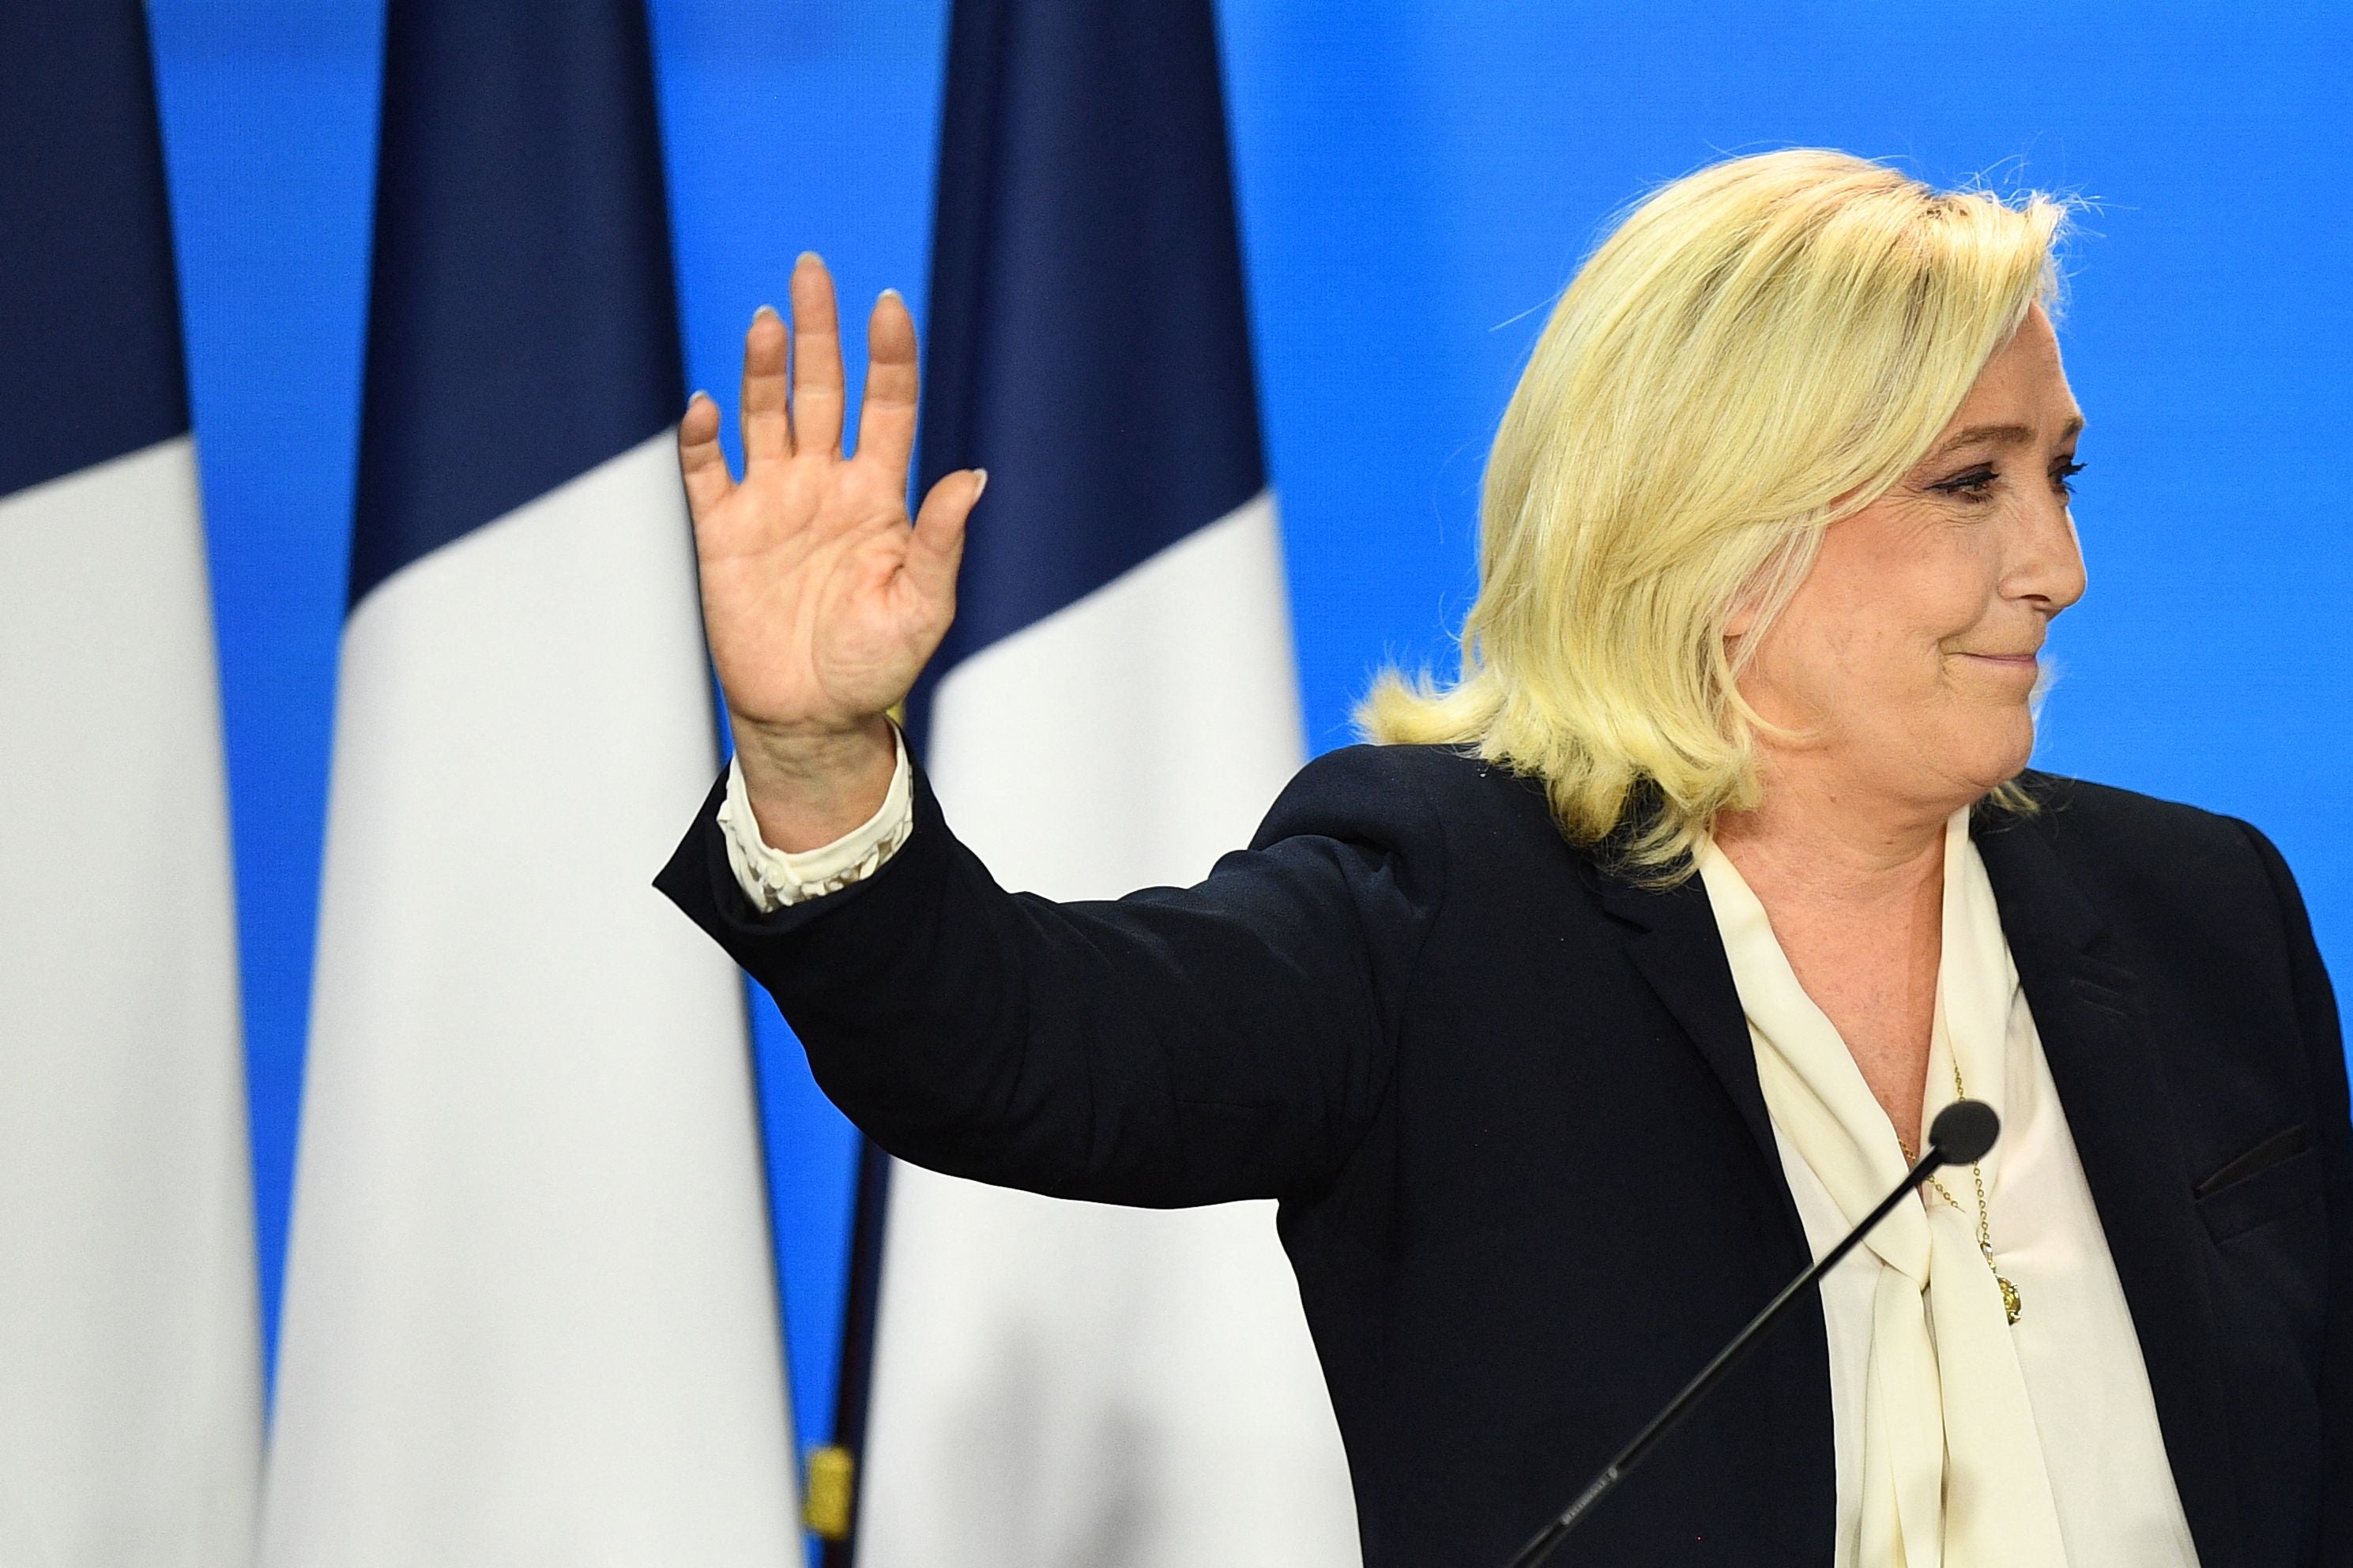 Un hasta pronto, no un adiós: Marine Le Pen reacciona luego de su derrota